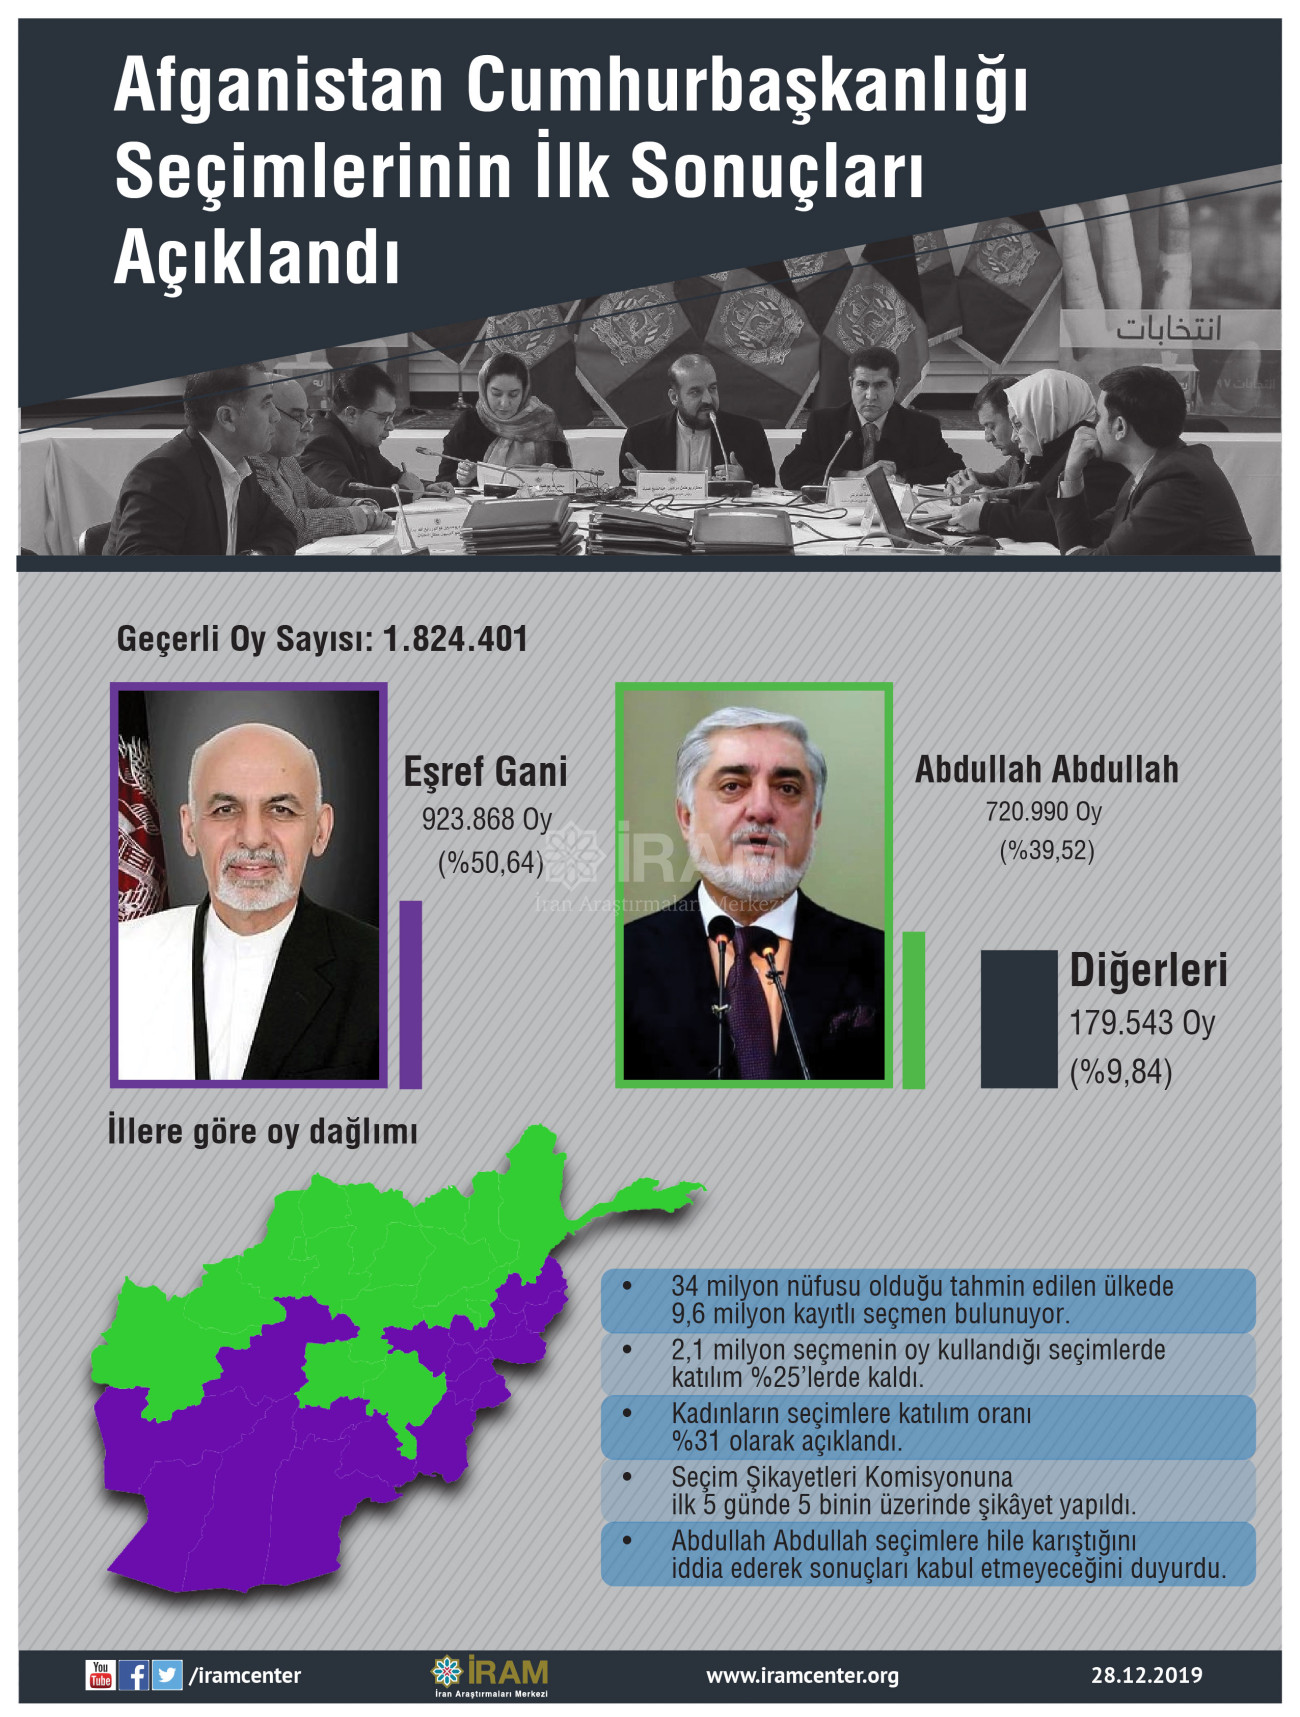 Afganistan Cumhurbaşkanlığı Seçimlerinin İlk Sonuçları Açıklandı